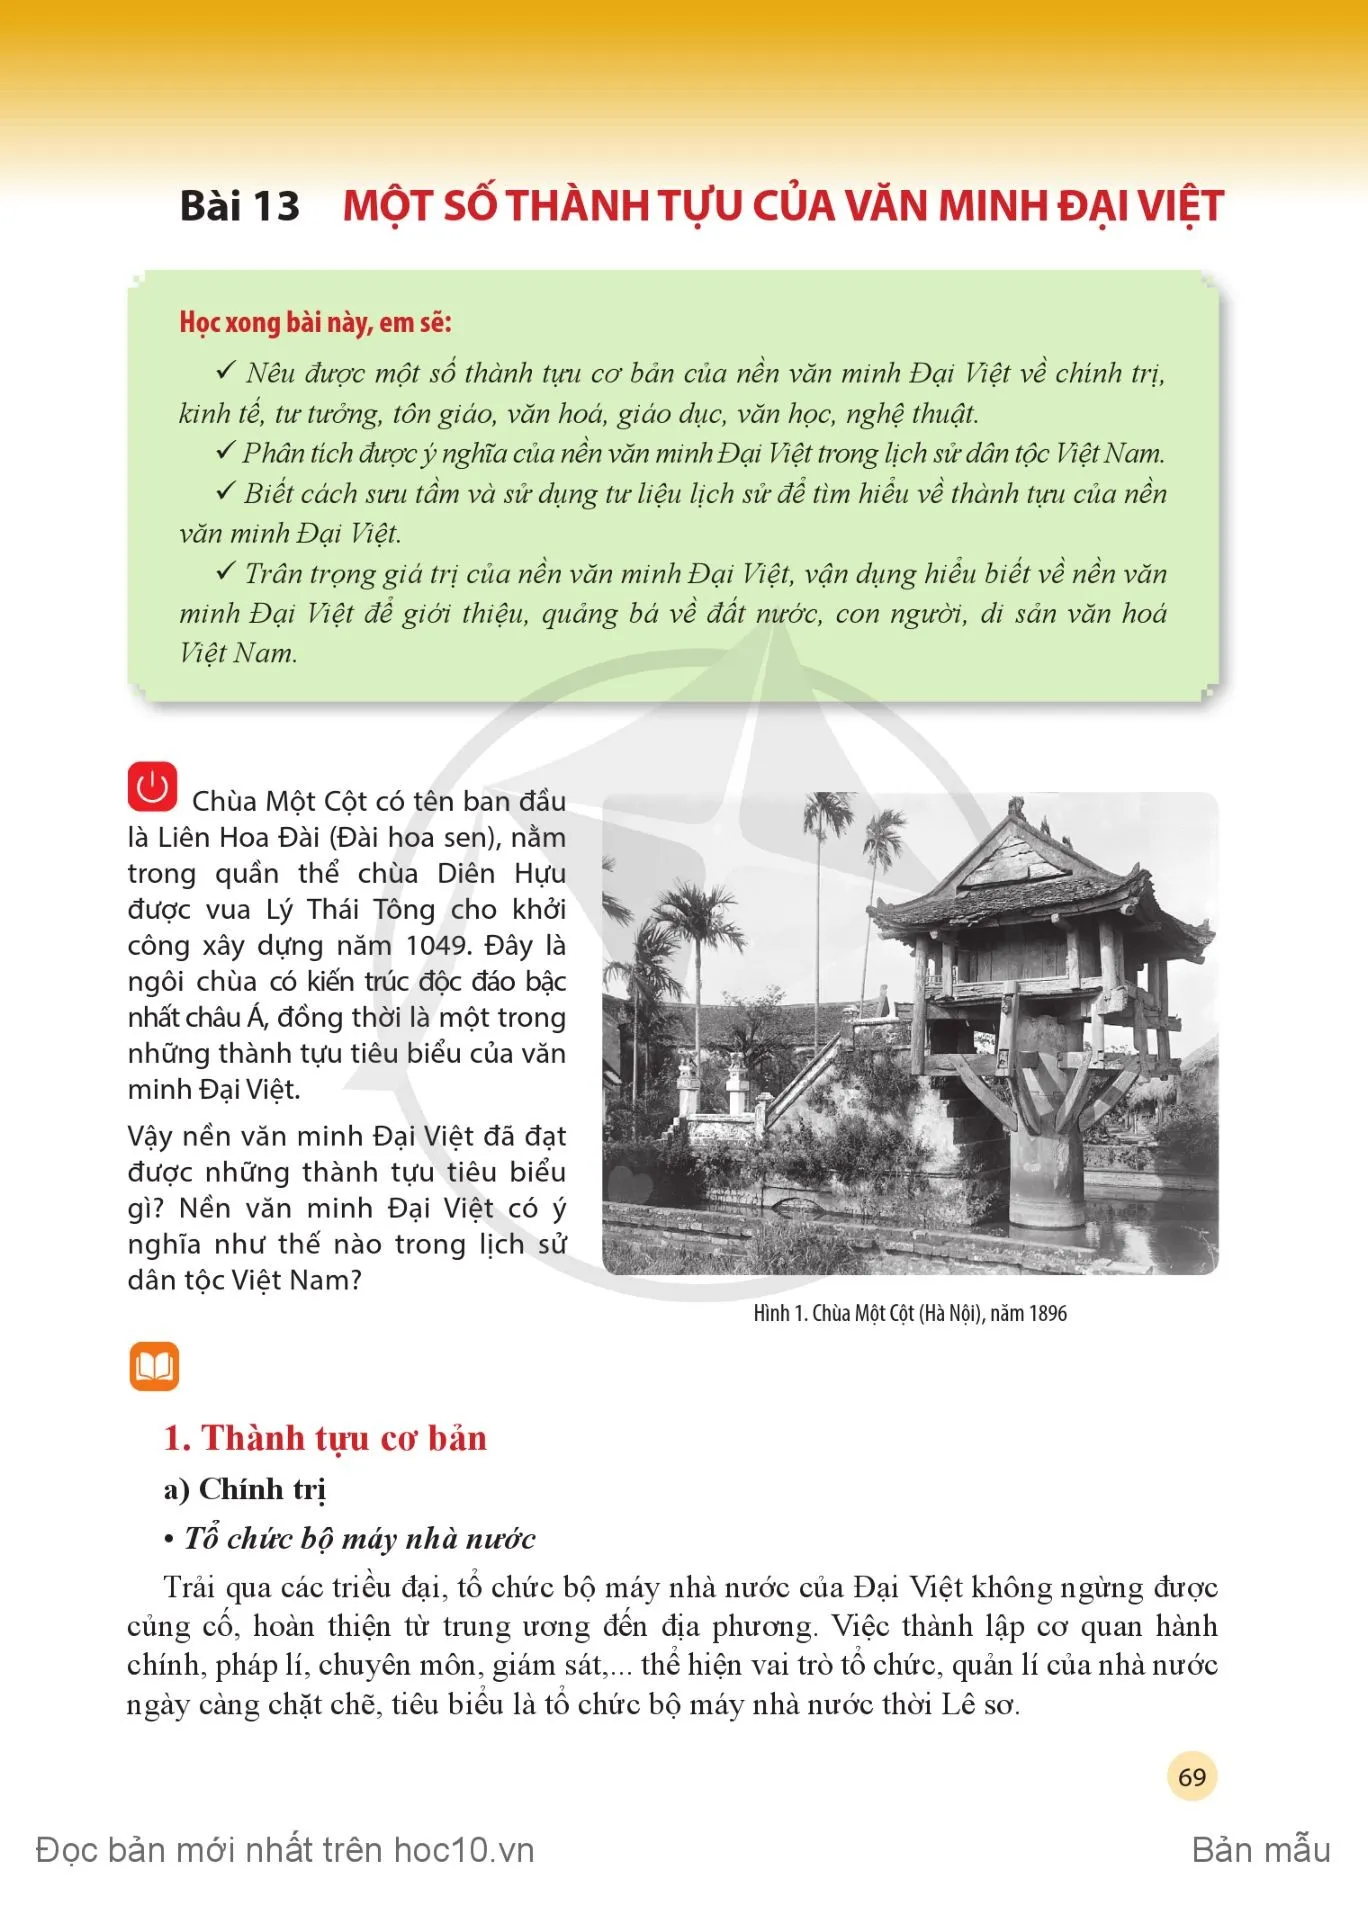 Bài 13: Một số thành tựu của văn minh Đại Việt